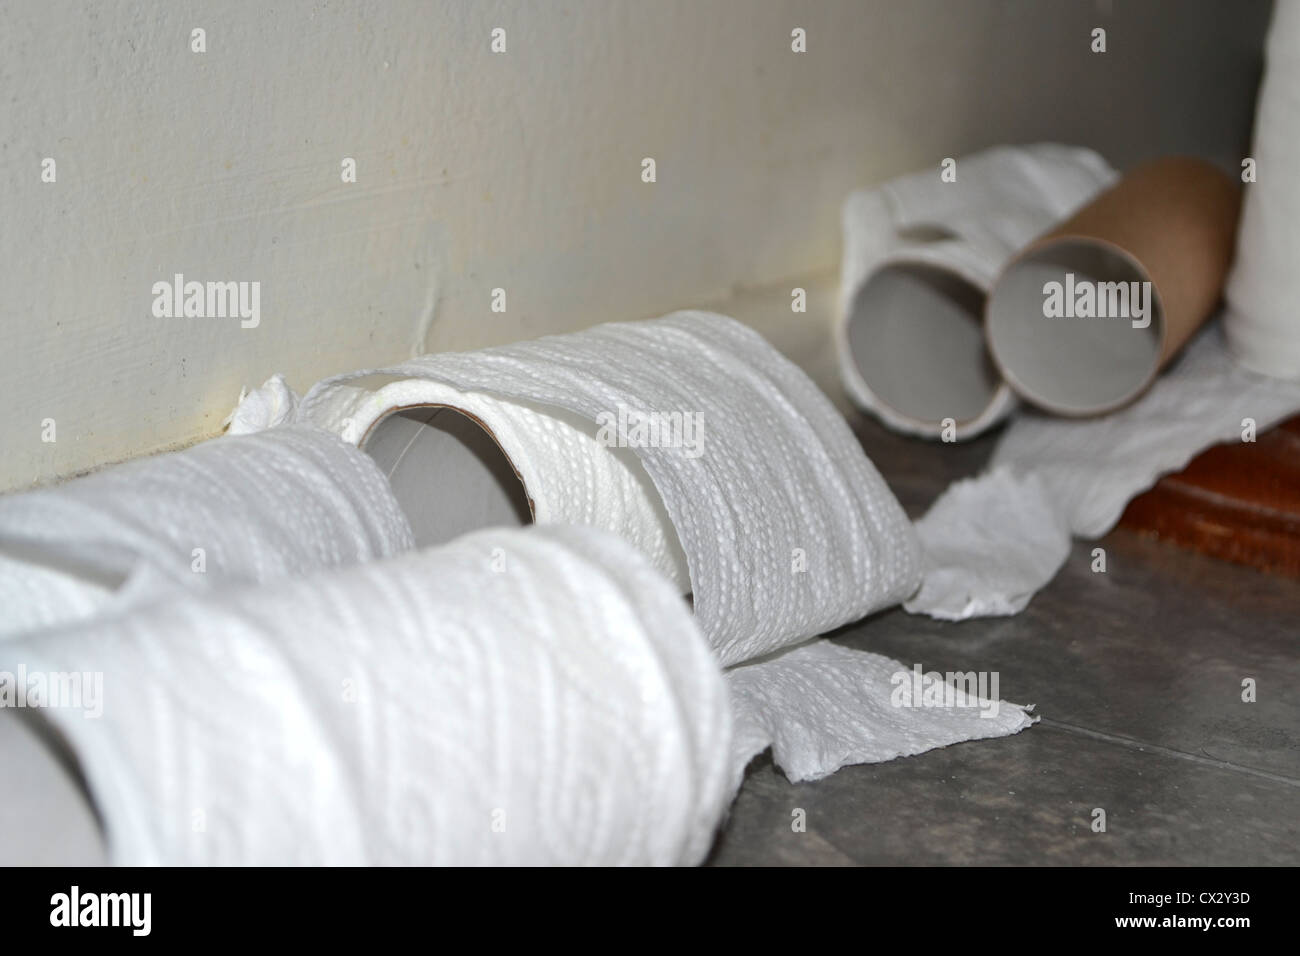 Salle de bains désordonnées des rouleaux de papier de toilette Banque D'Images